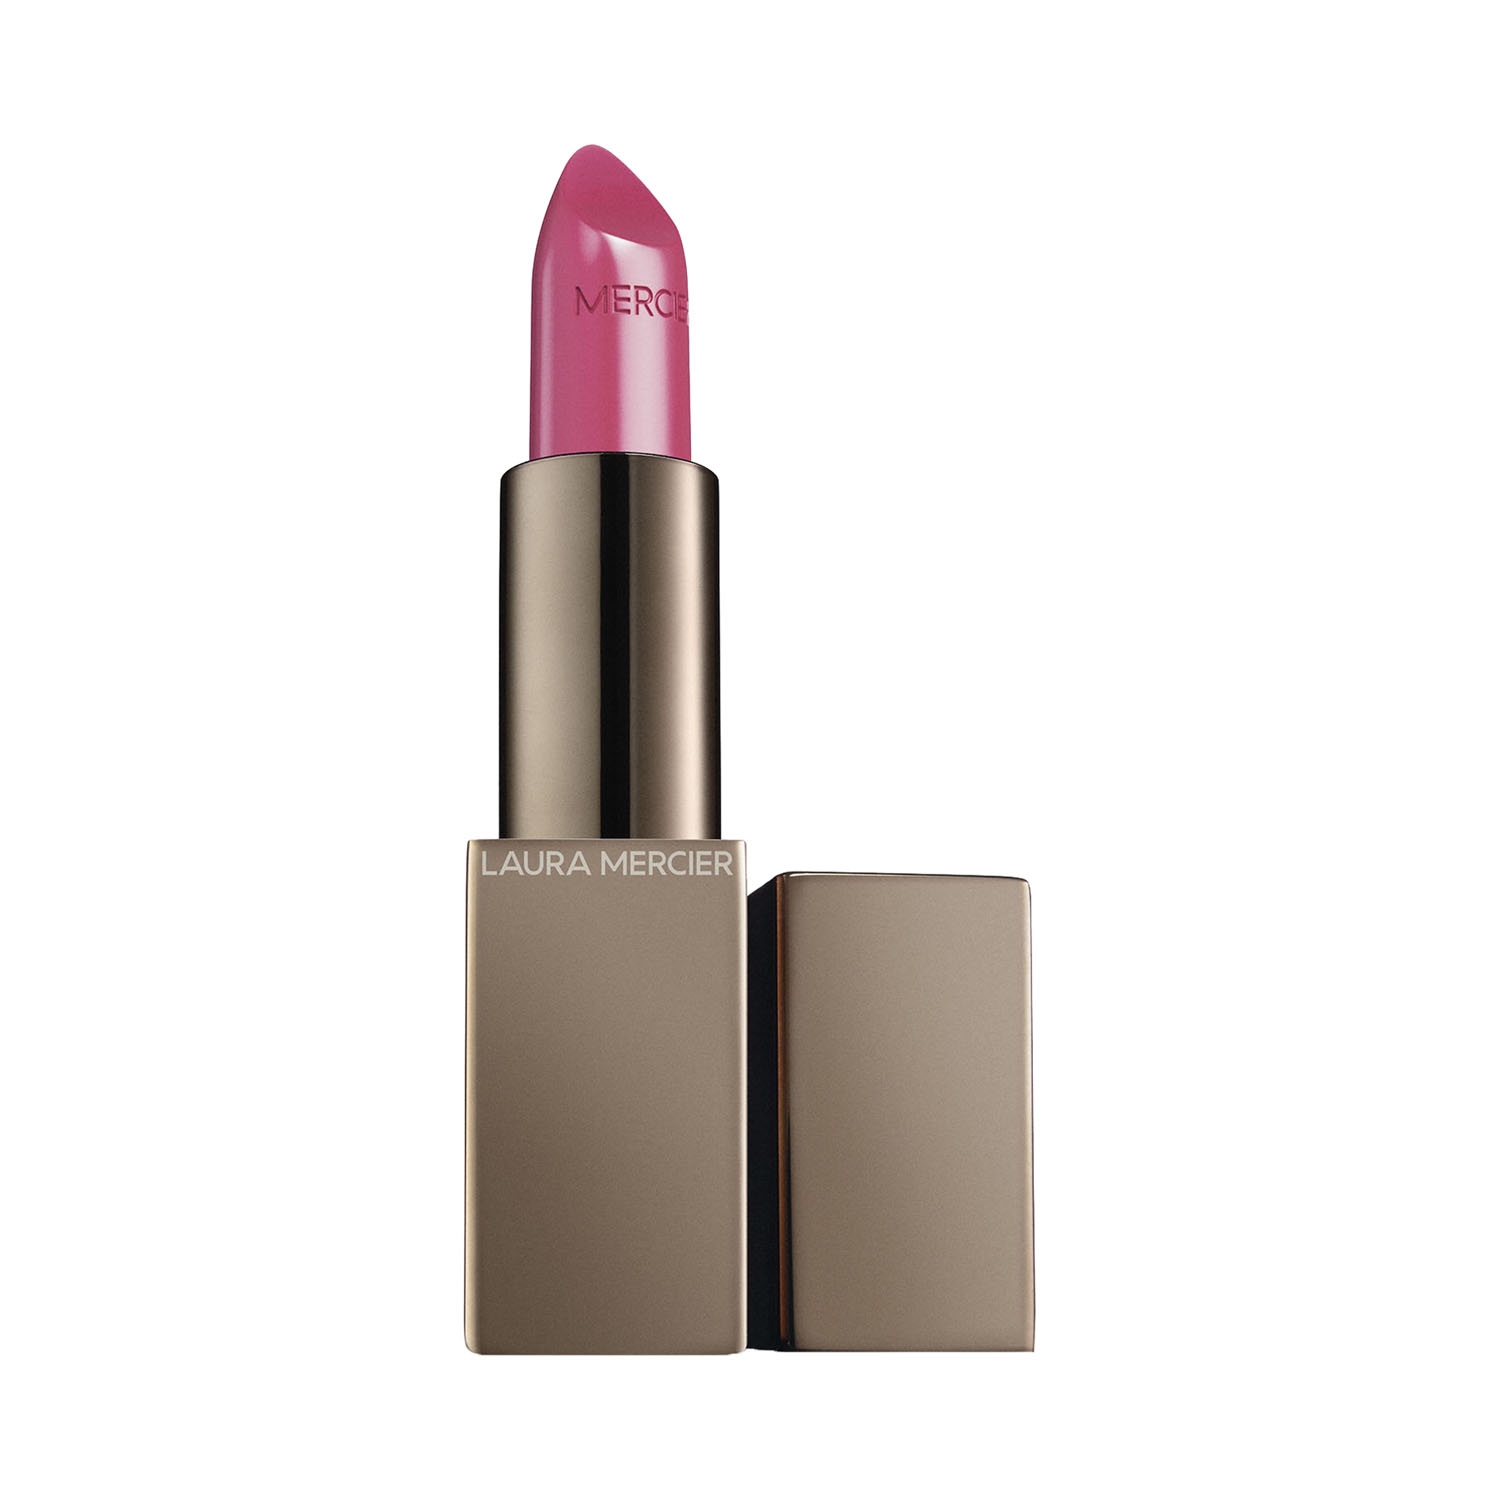 Laura Mercier | Laura Mercier Rouge Essentiel Silky Creme Lipstick - 05 Blush Pink (3.5g)